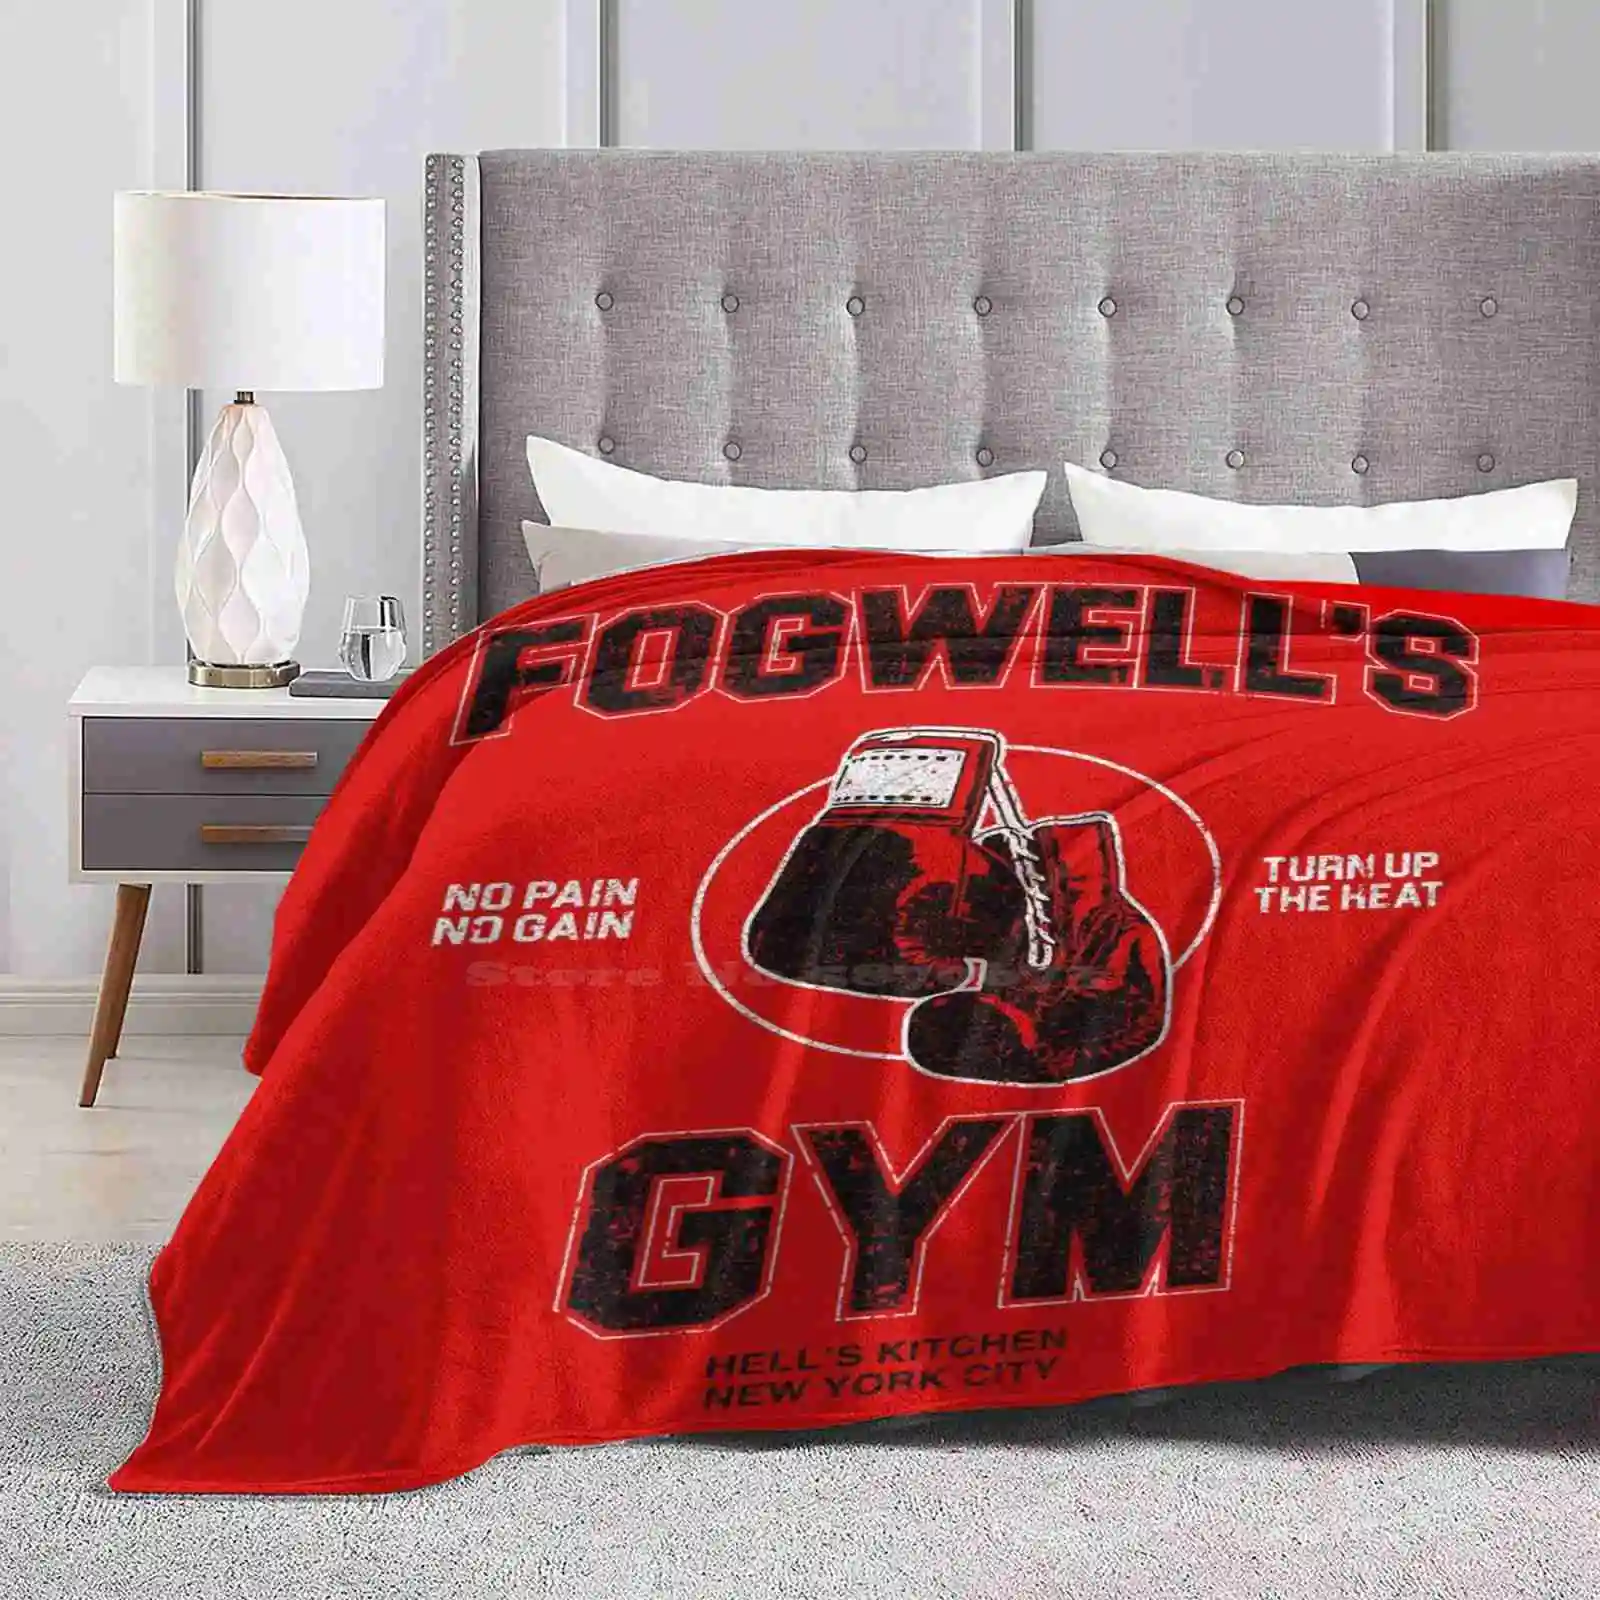 

Fogwelle S Gym (вариант), креативный дизайн, удобное теплое фланелевое одеяло, кроватка, Фогги Нельсон, дьявол, супергерои, хеллы, кухня